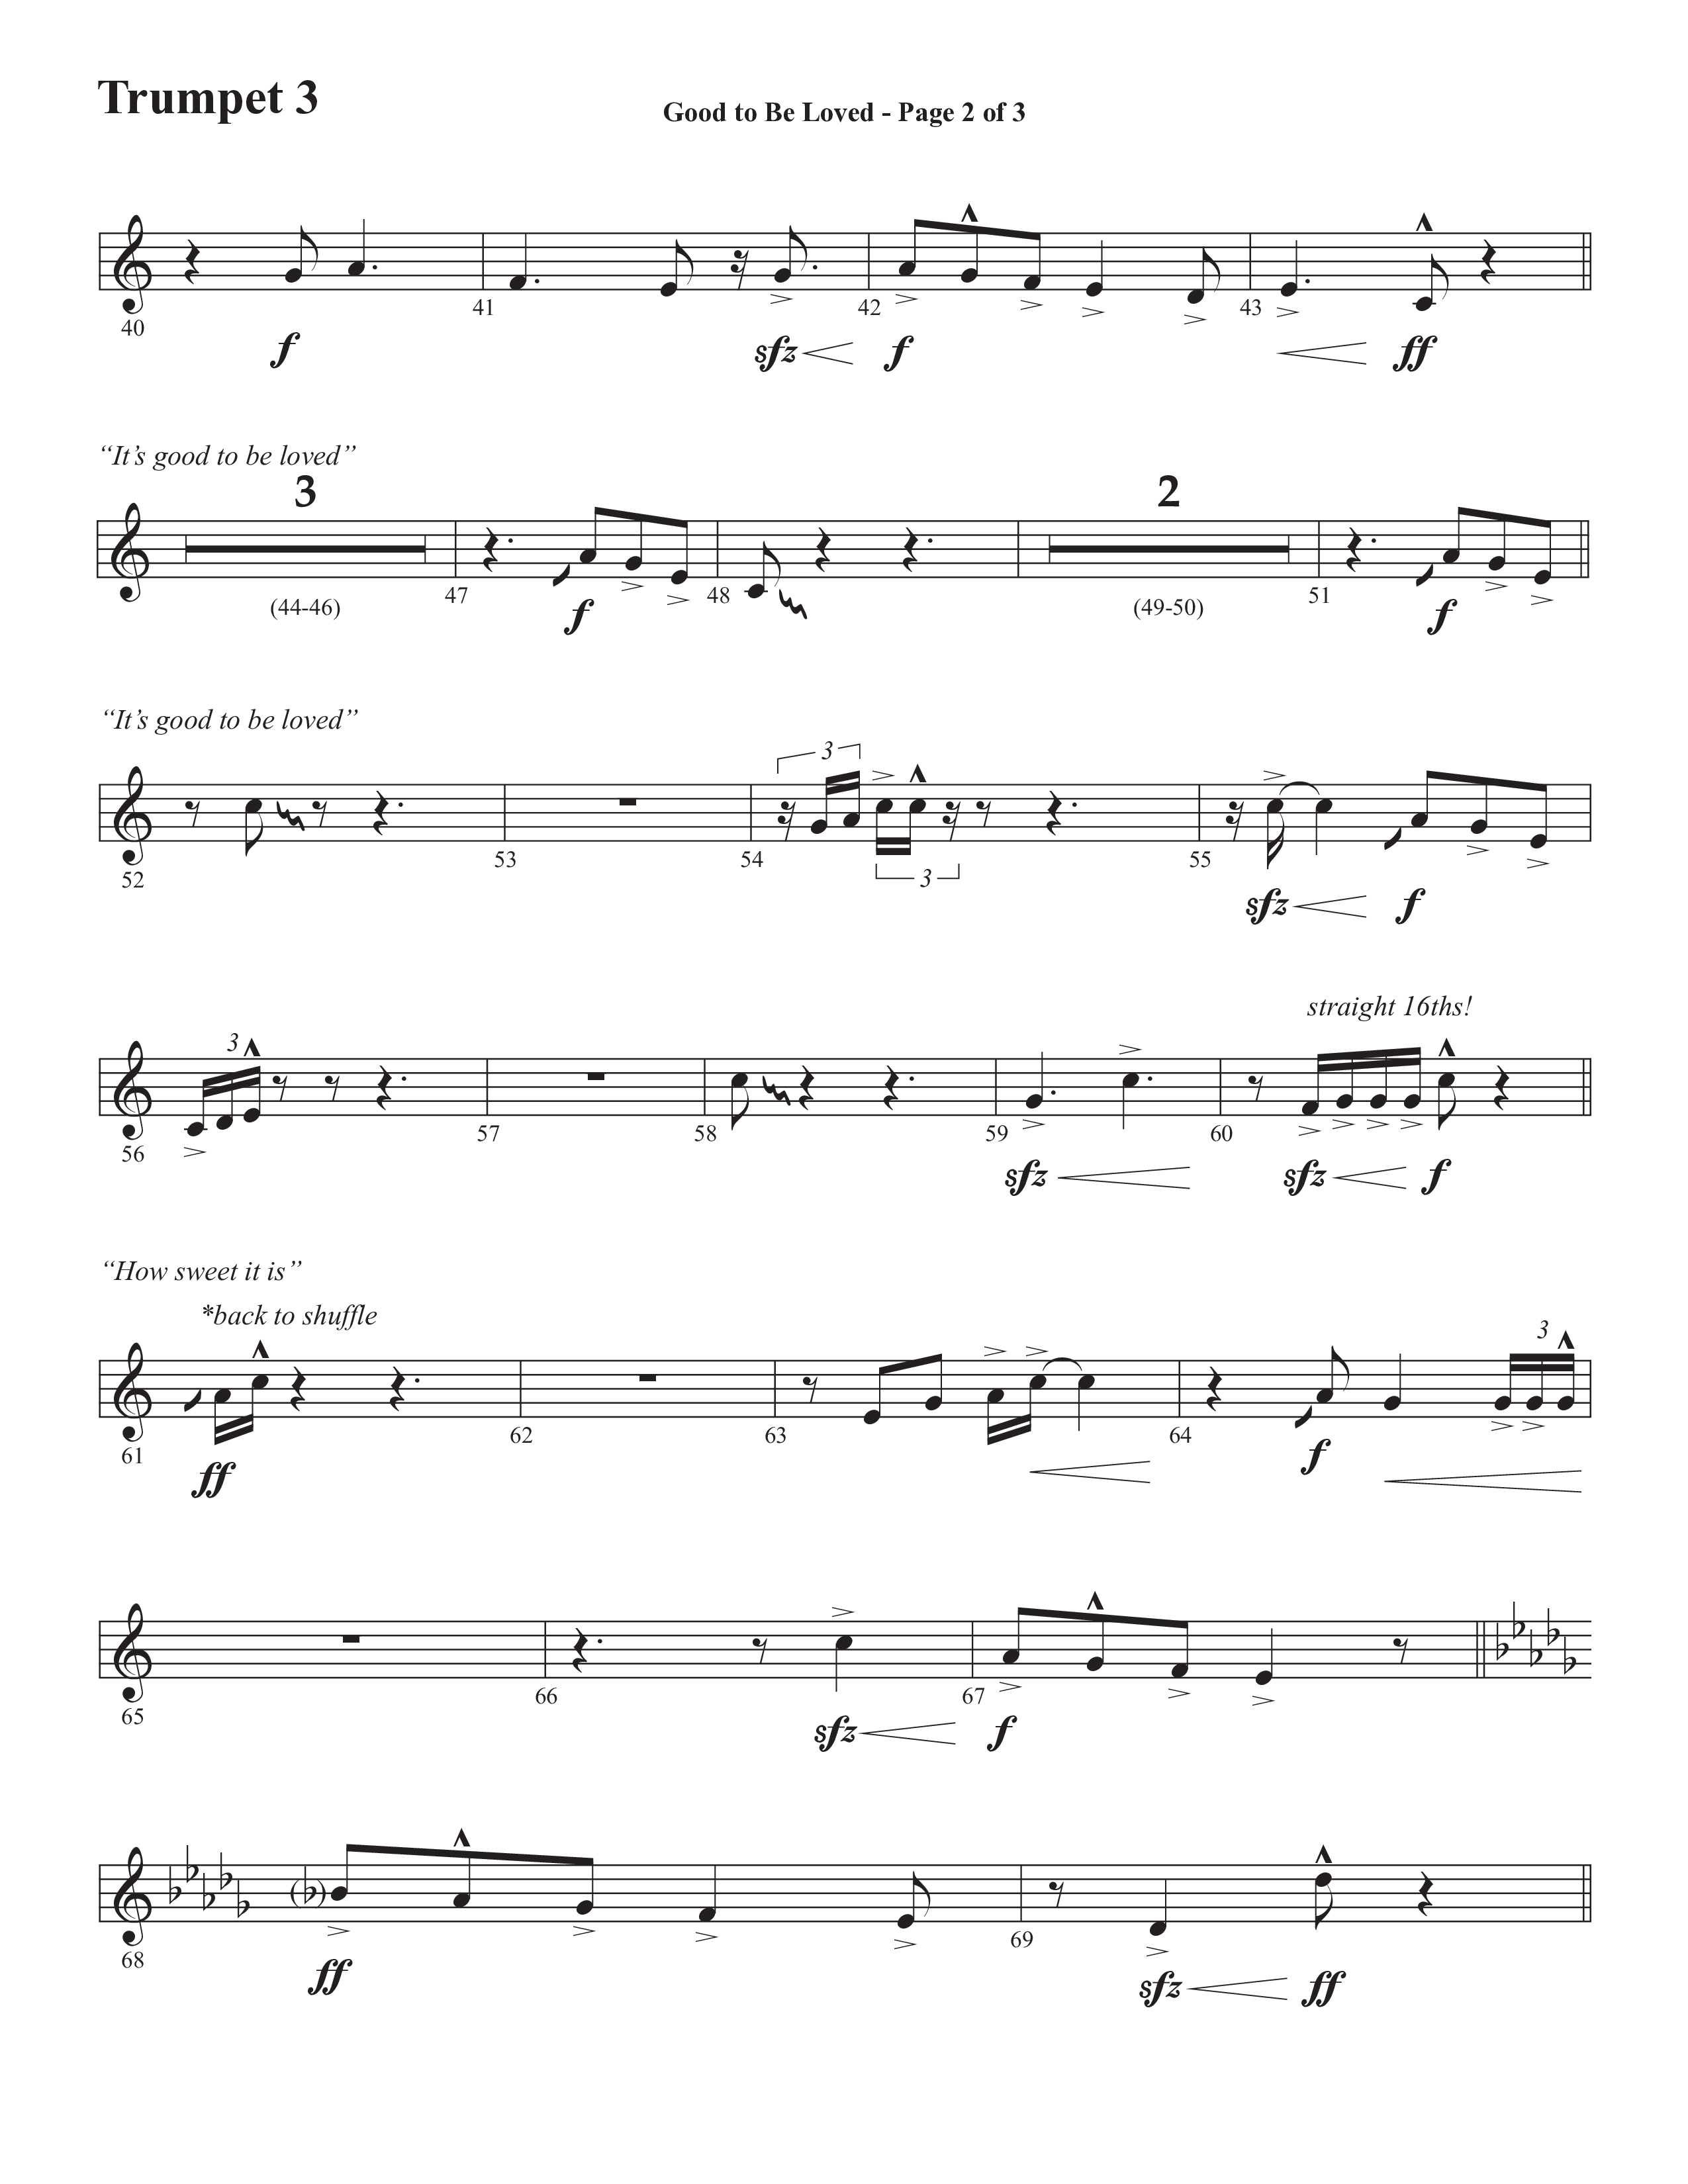 Good To Be Loved (Choral Anthem SATB) Trumpet 3 (Semsen Music / Arr. Cliff Duren)